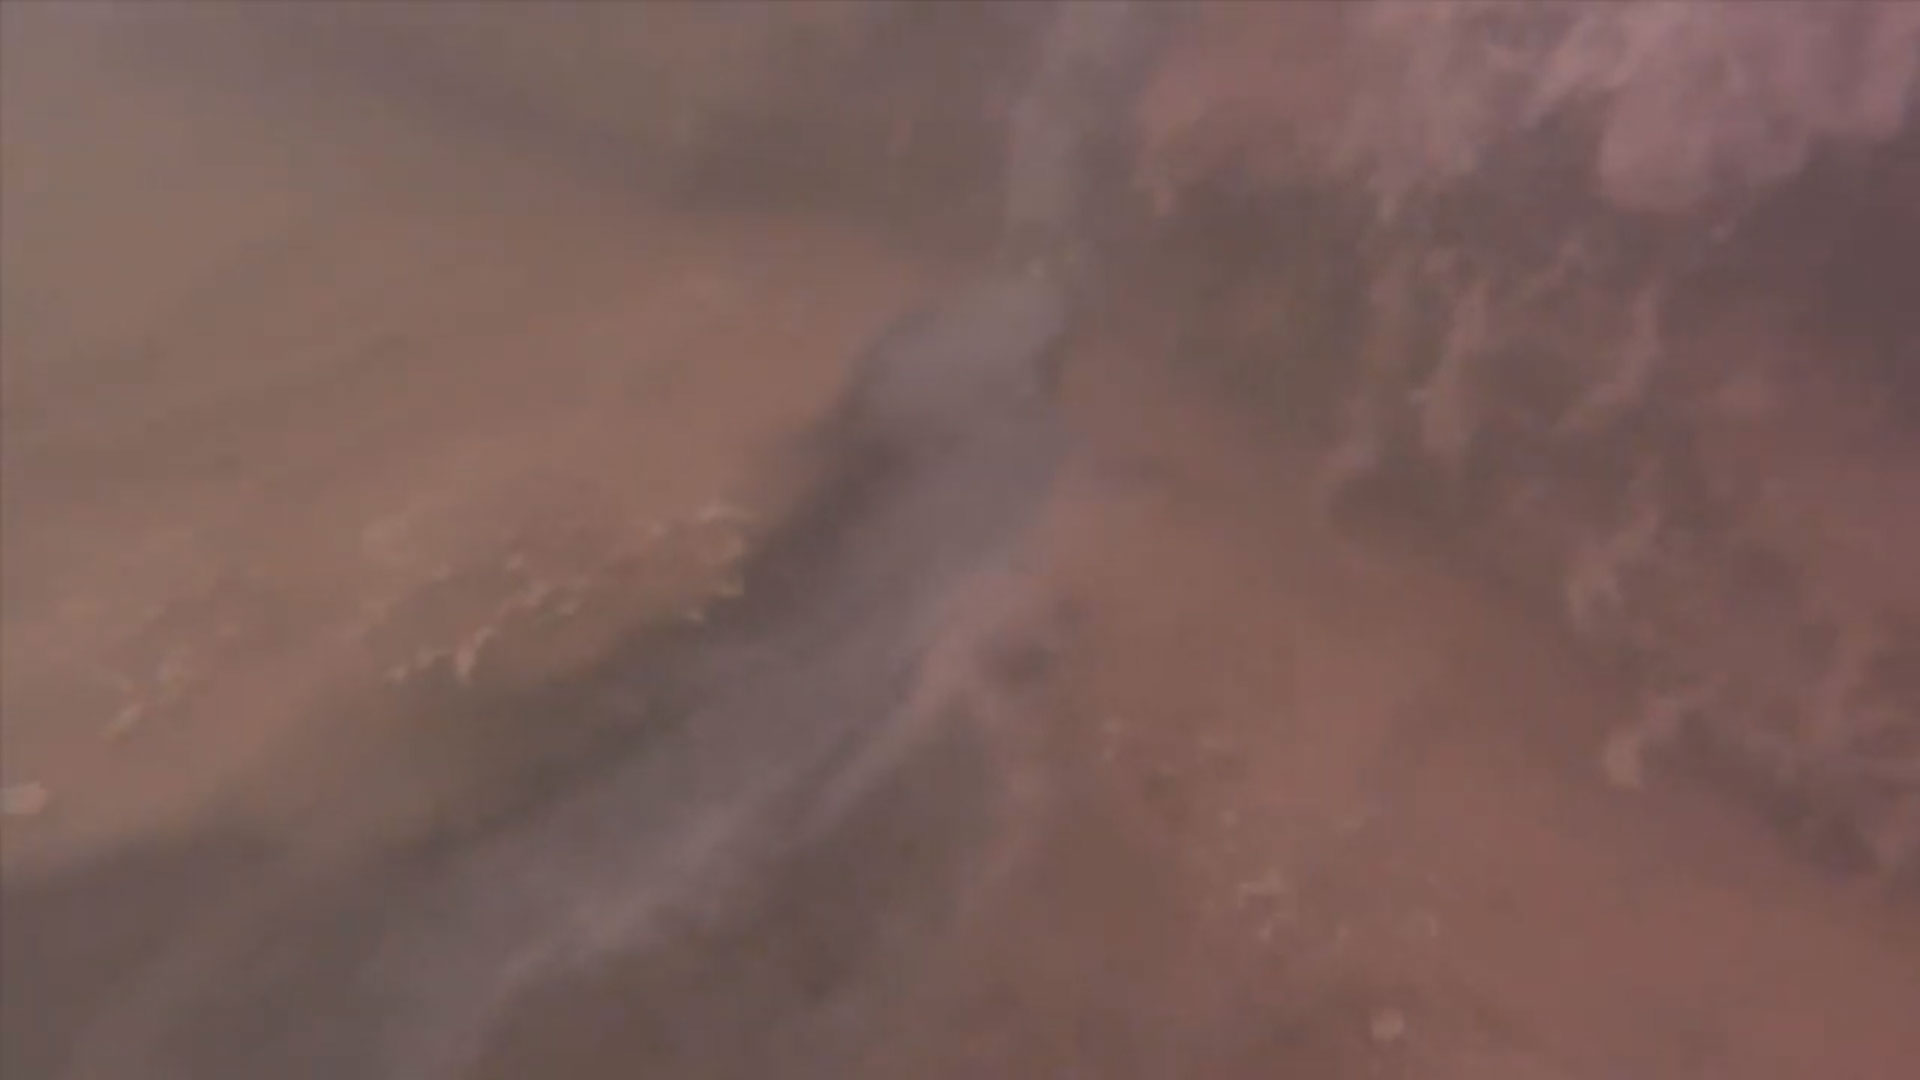 oil-seep-underwater-drone-rov.jpg